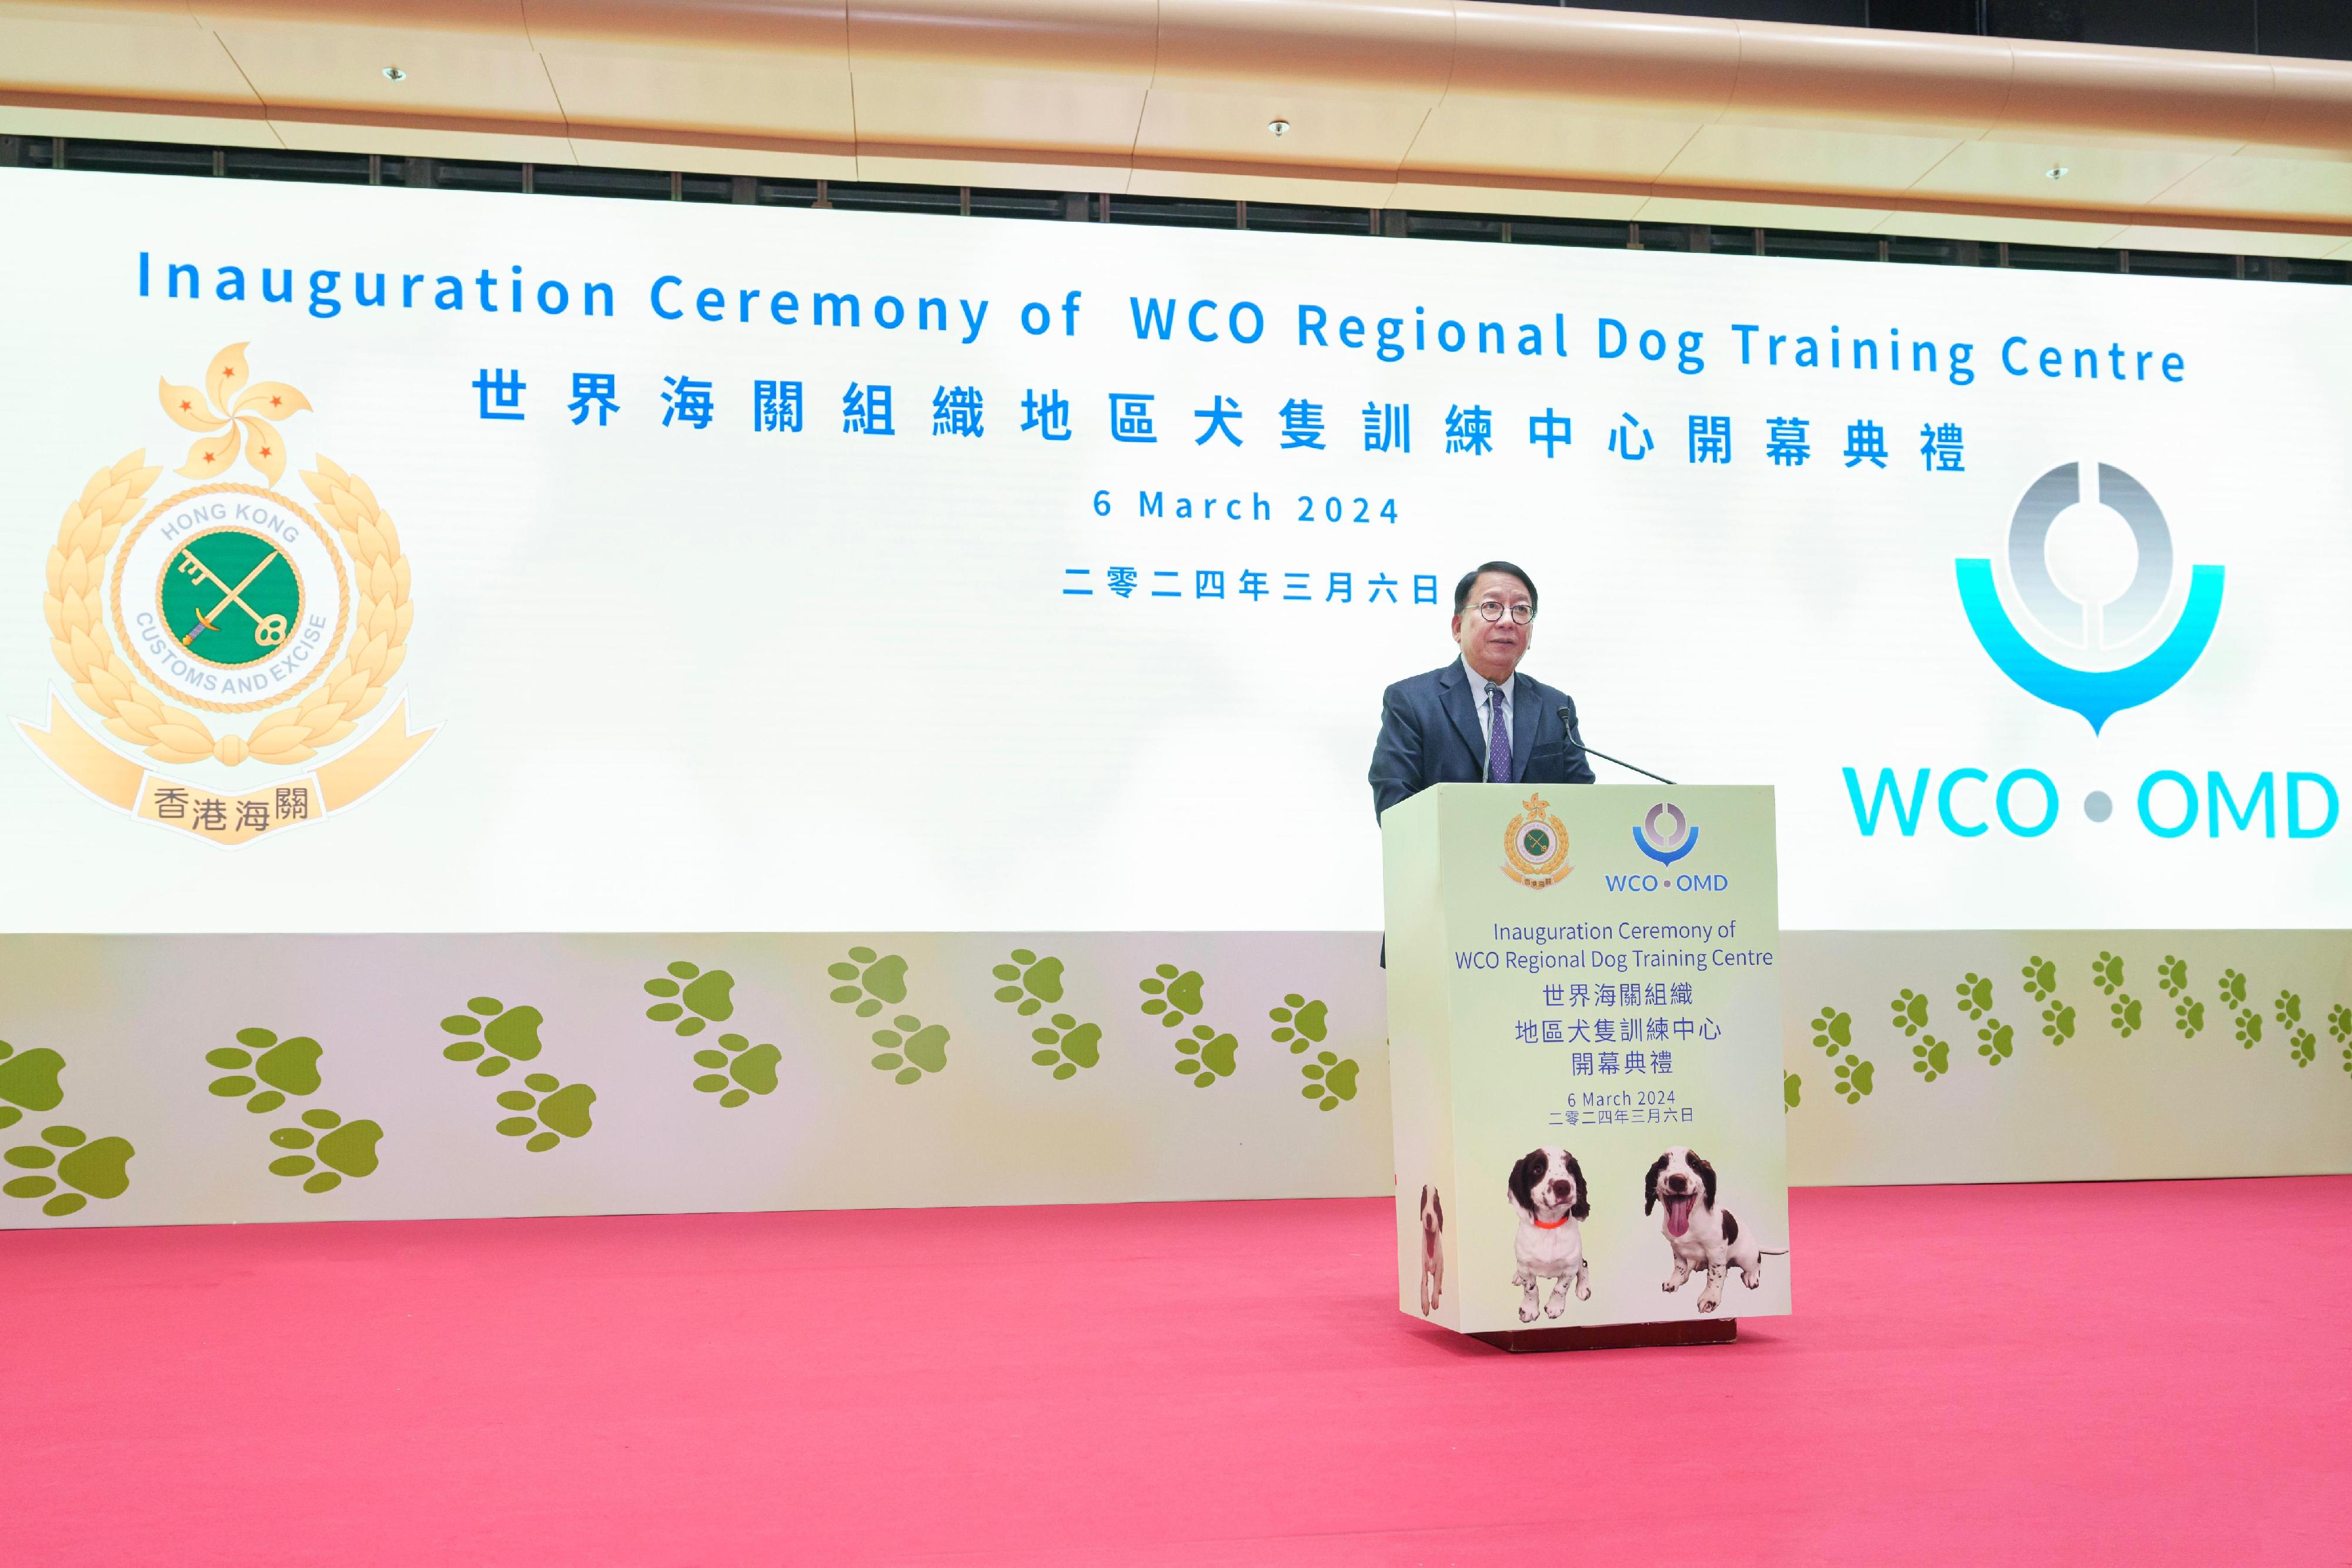 香港海關今日（三月六日）為世界海關組織地區犬隻訓練中心舉行開幕典禮。圖示政務司司長陳國基在典禮上致辭。